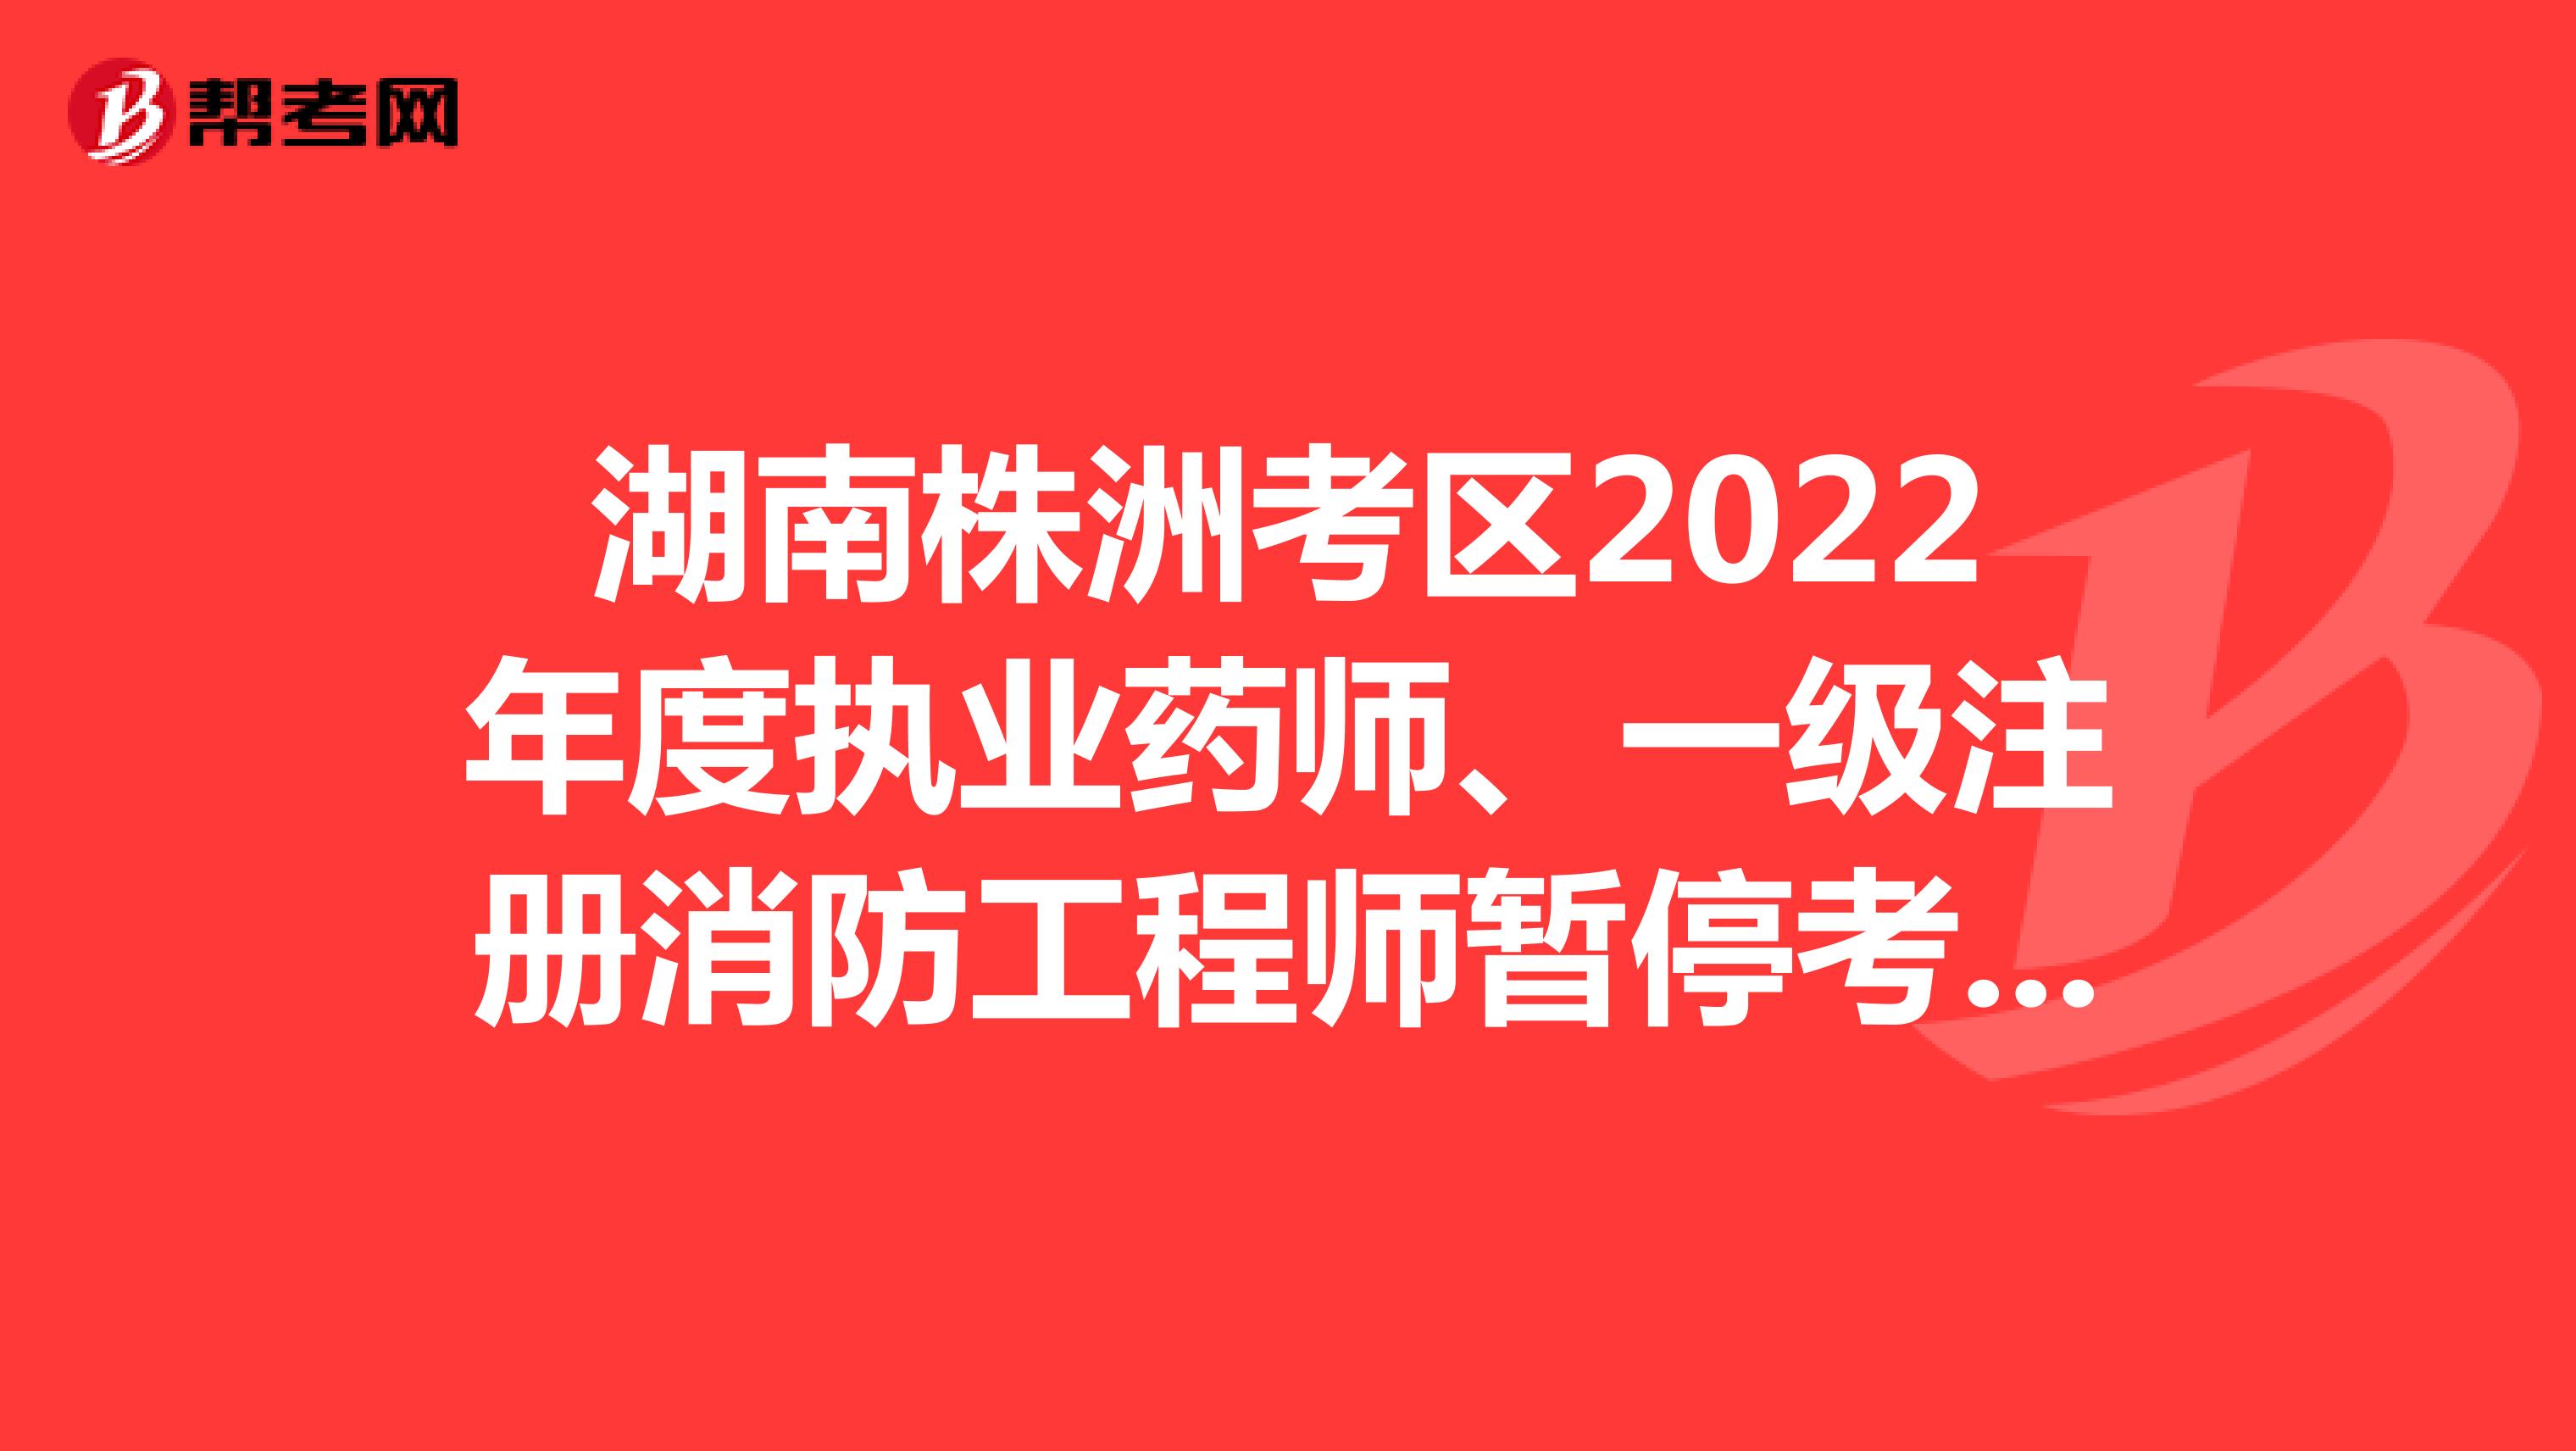 湖南株洲考区2022年度执业药师、一级注册消防工程师暂停考试的通告